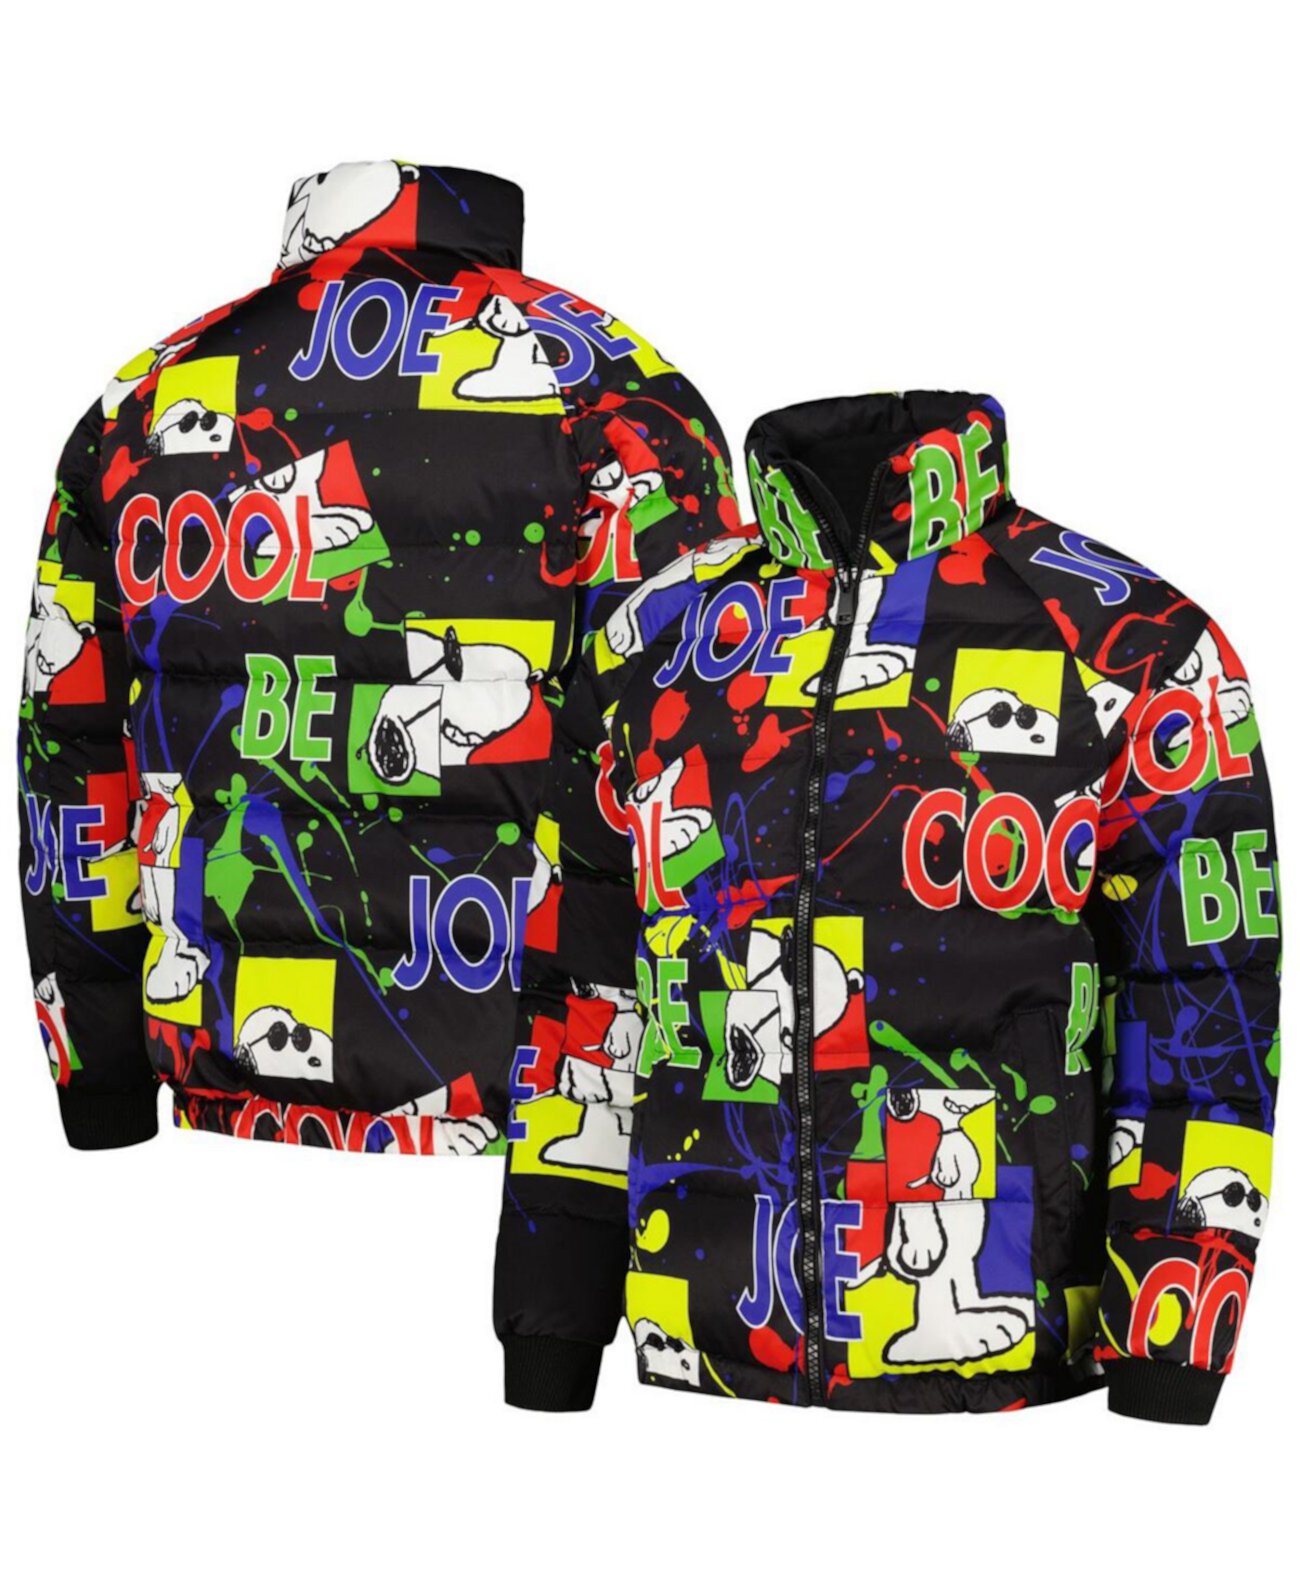 Мужская куртка-пуховик Black Peanuts Joe Cool реглан с молнией во всю длину Freeze Max